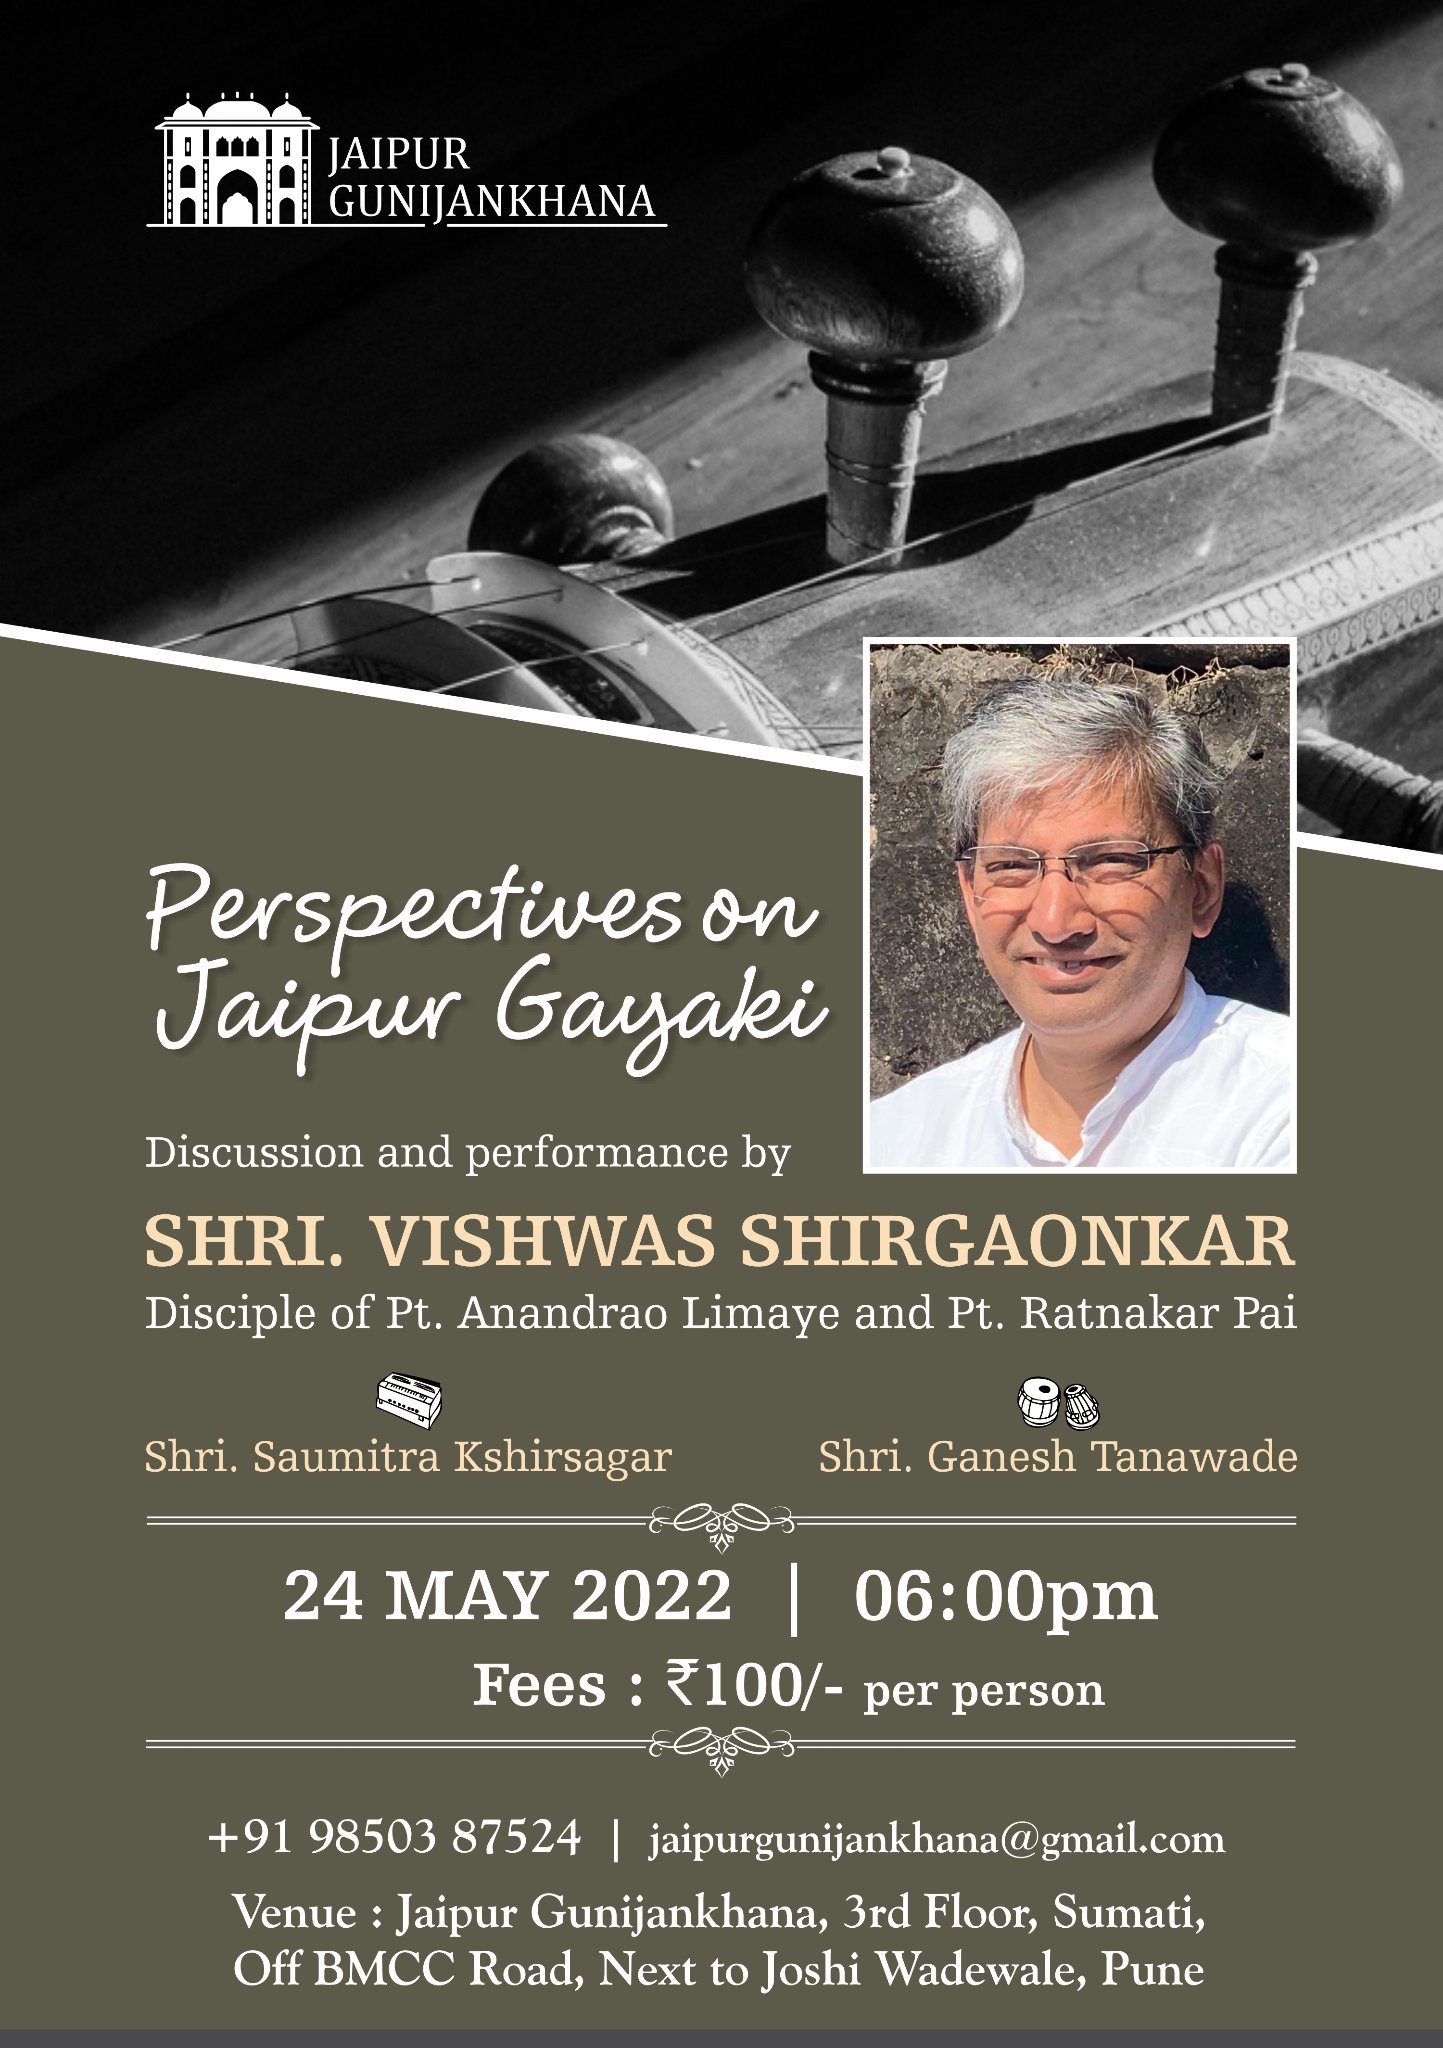 Perspective on jaipur gayaki by Shri. Vishvas Shirgaonkar 